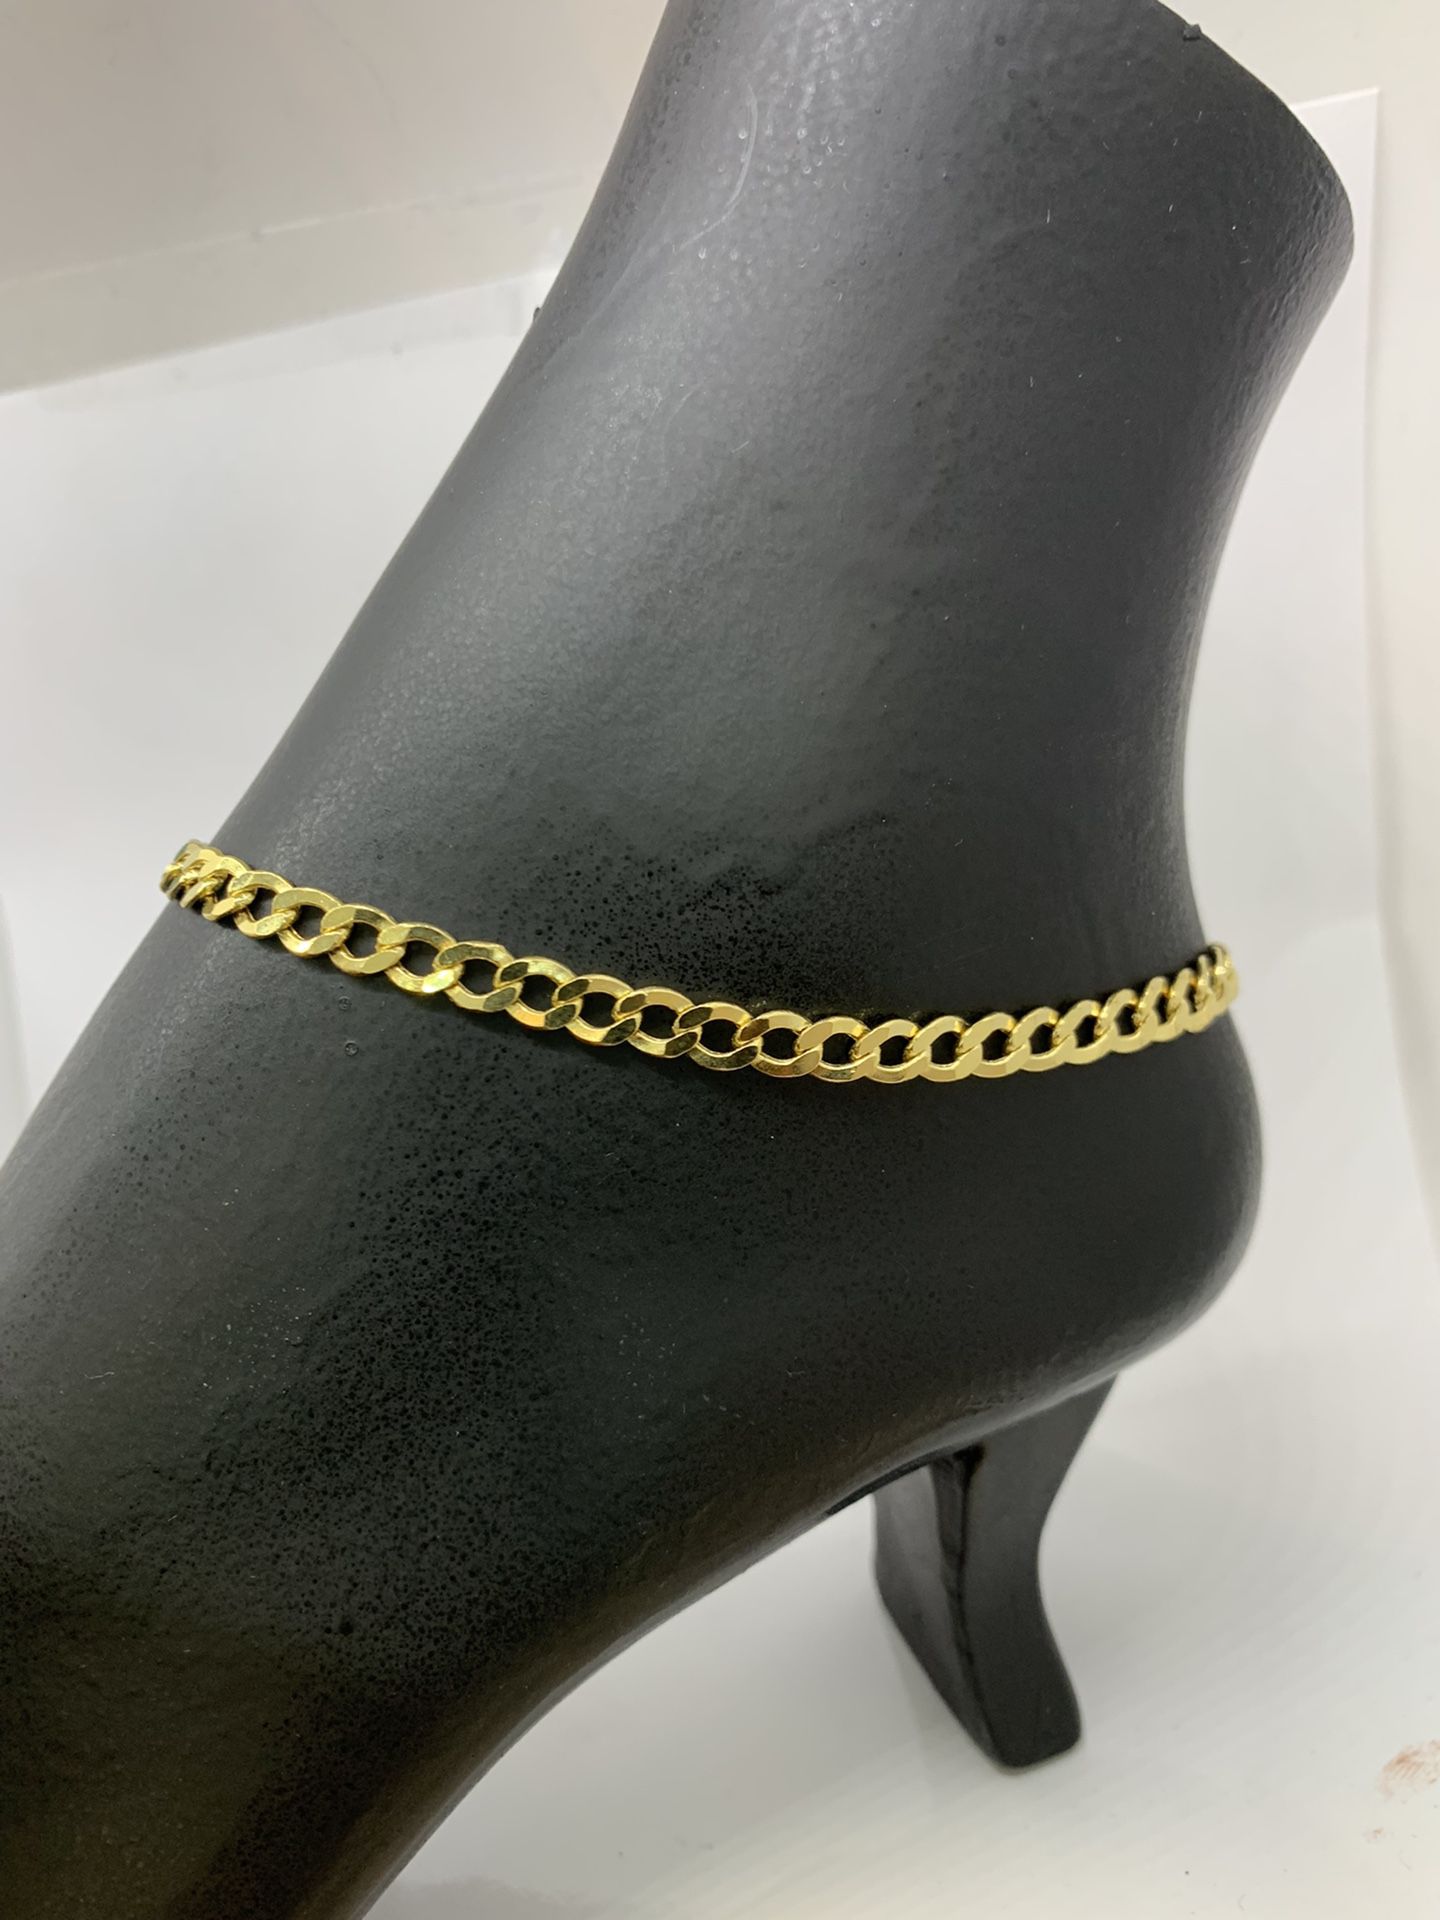 14 karat solid gold ankle anklet bracelet 10 inches long